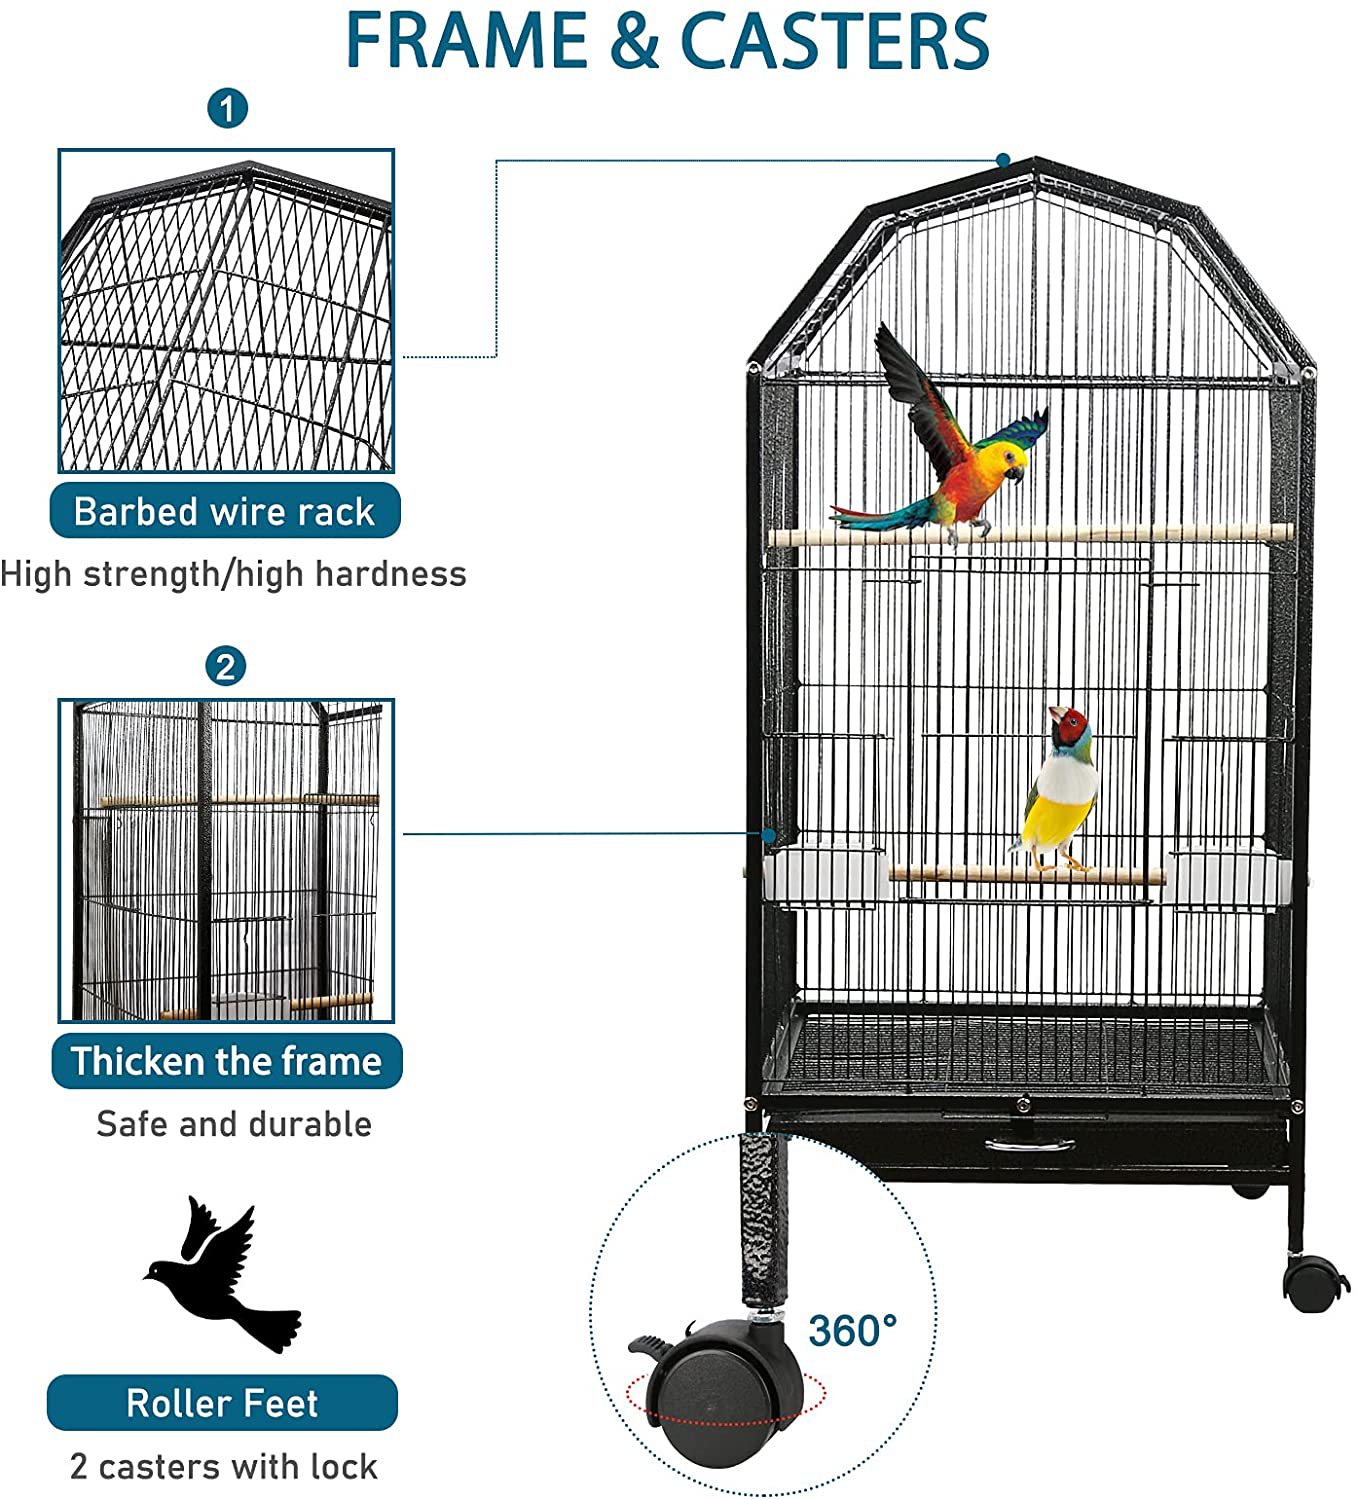 Cage oiseaux sur pied- l 29.5 P28 H145cm - RETIF